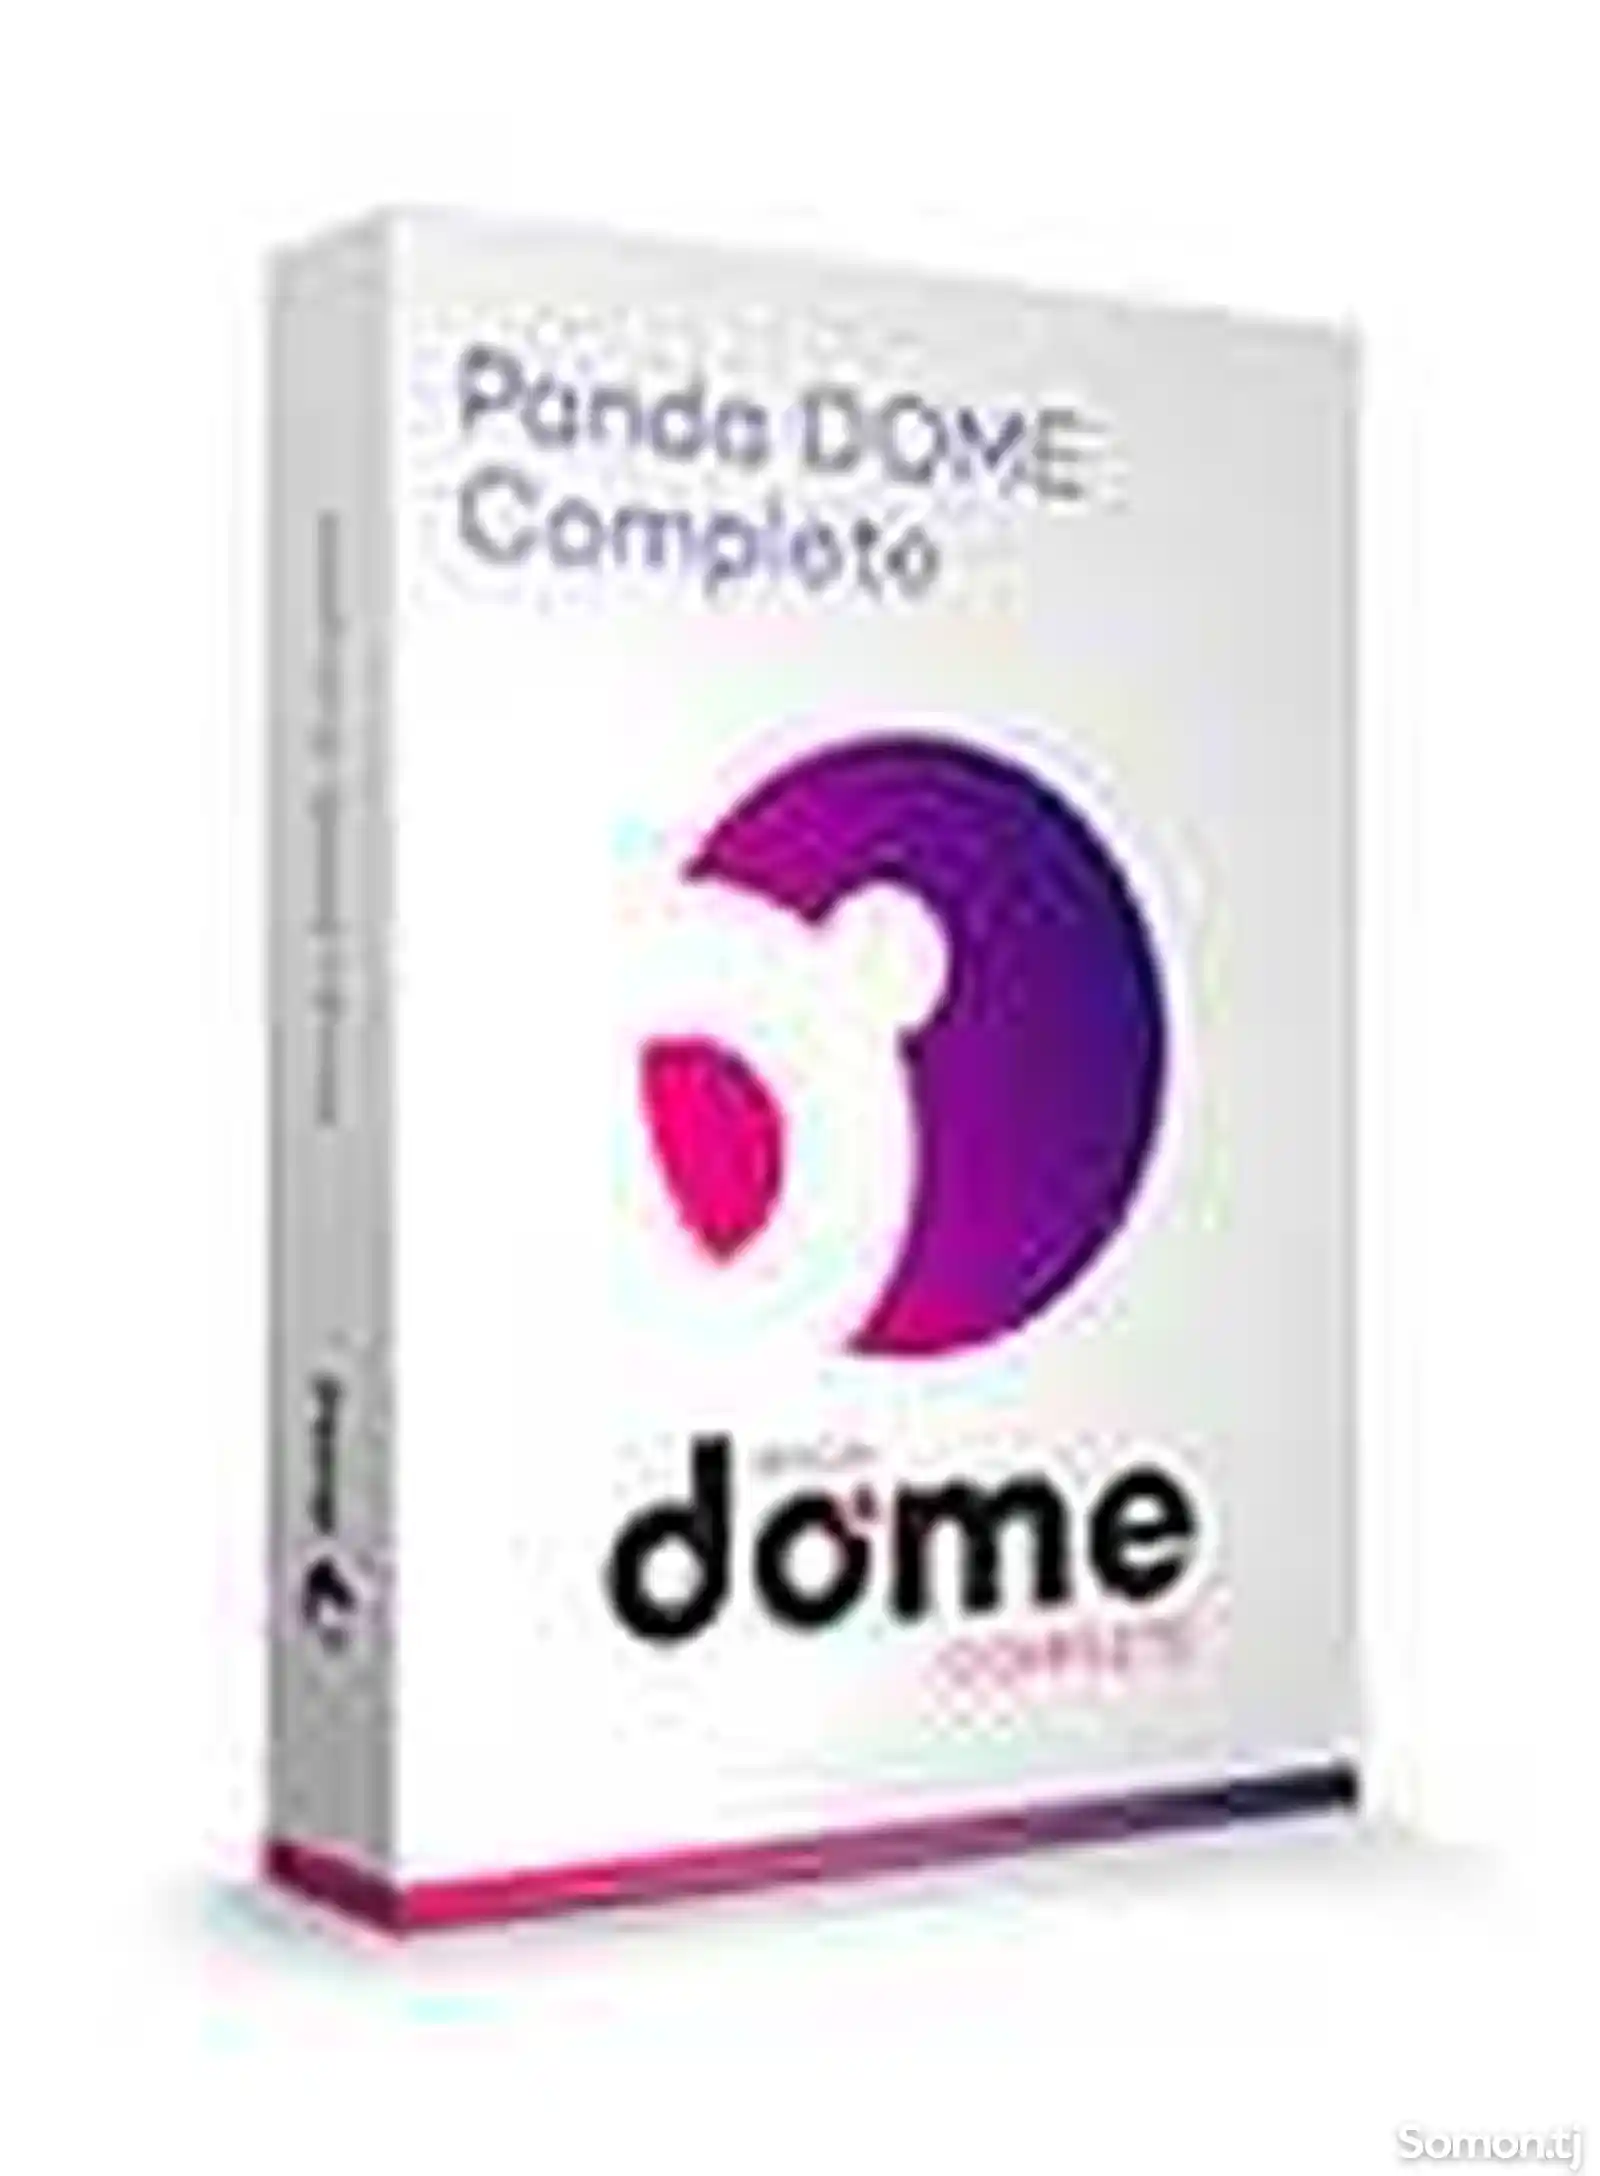 Panda Dome Complete - иҷозатнома барои 5 роёна, 1 сол